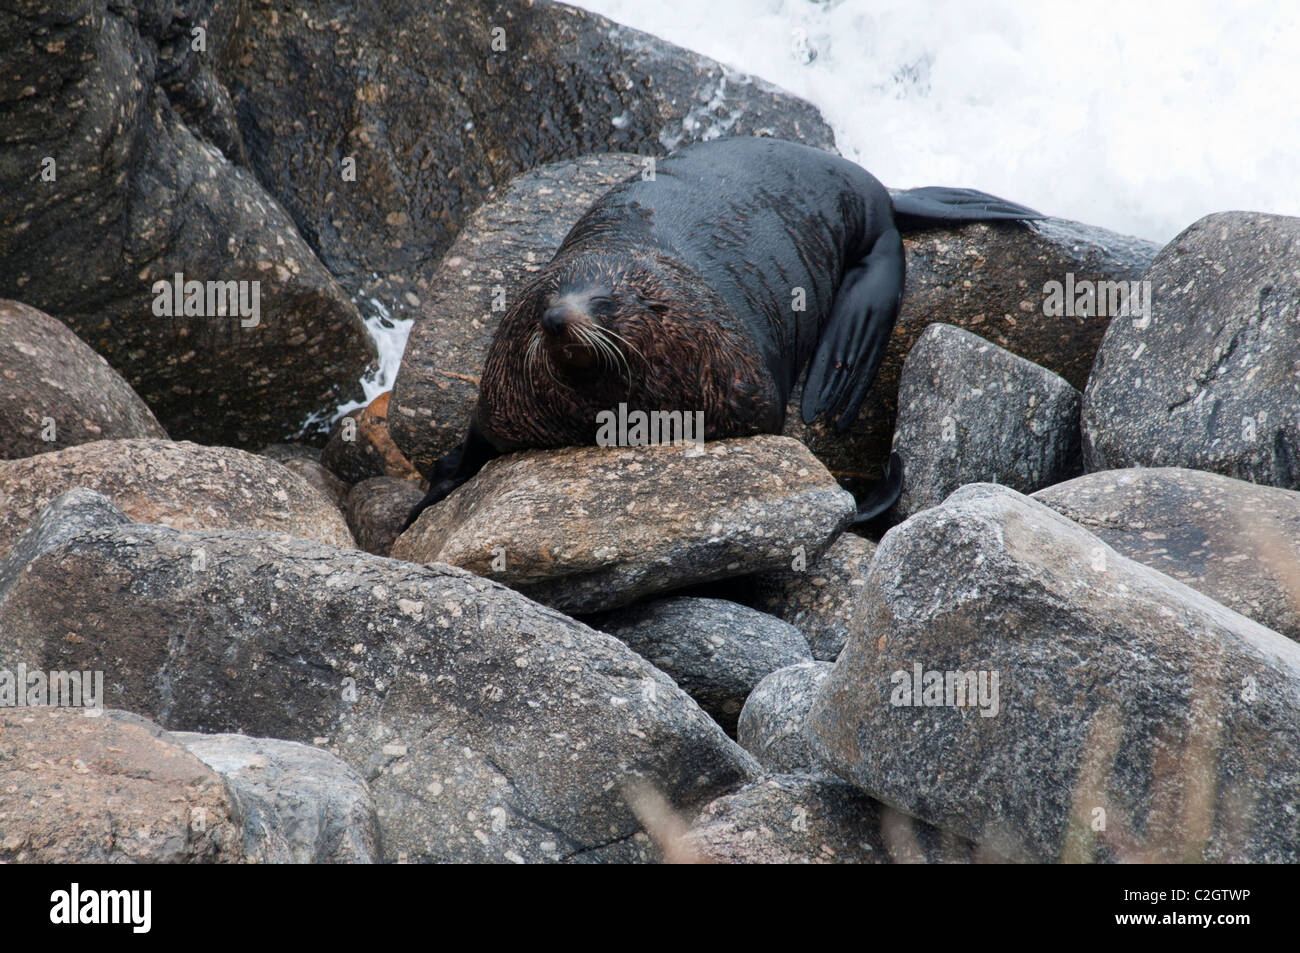 New Zealand Fur Seals rest always on rocky coastline.  Neuseeländische Seebären ruhen immer an Felsküsten. Stock Photo